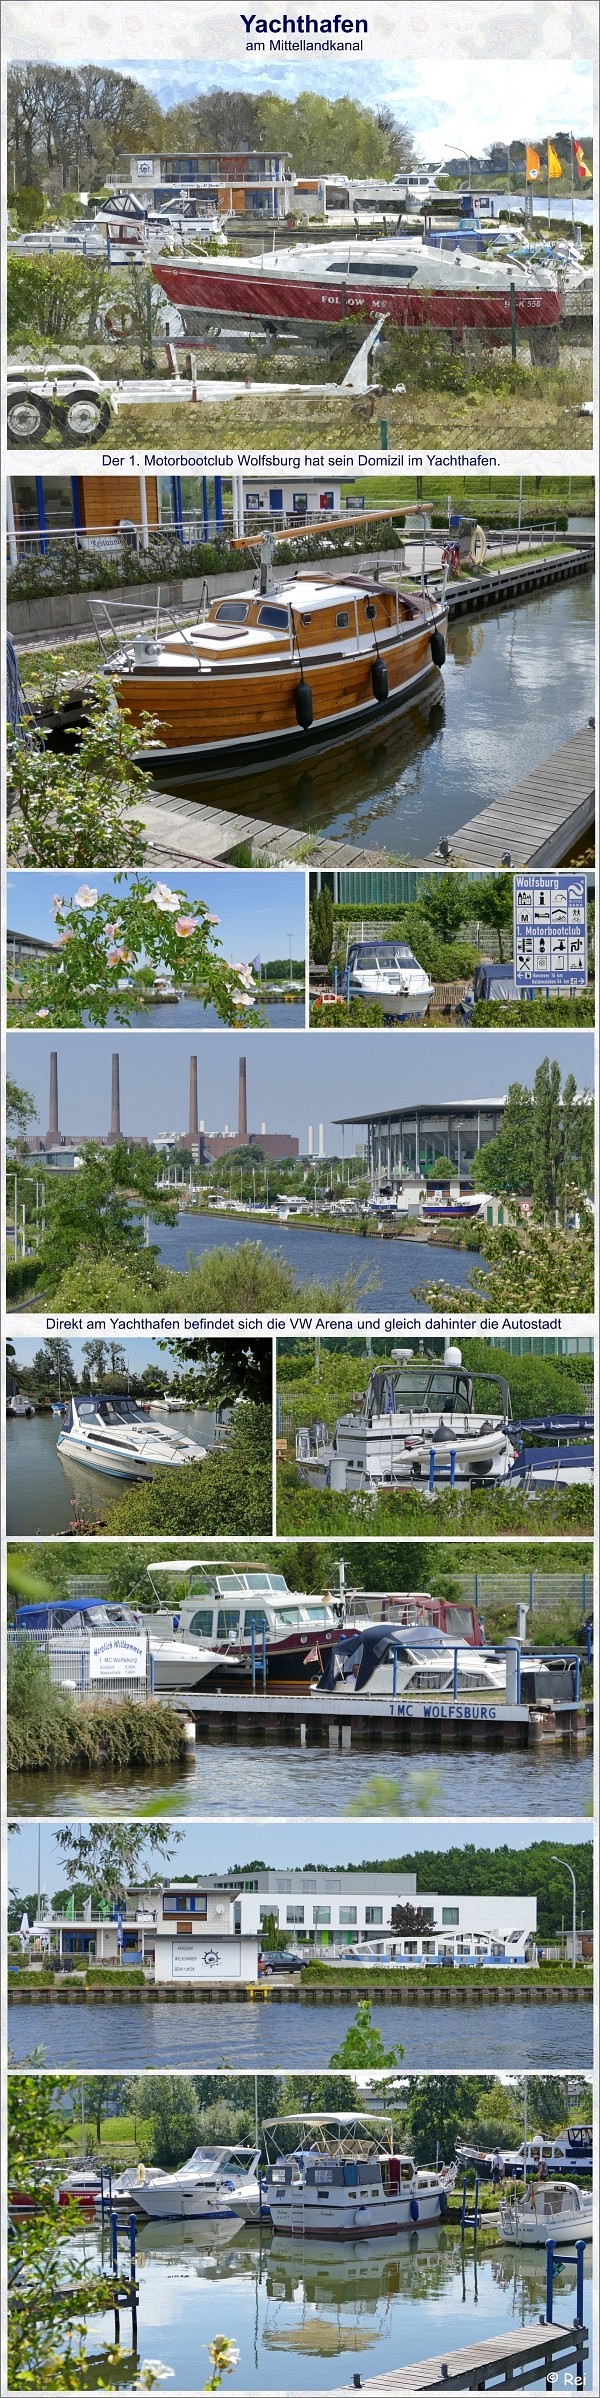 Yachthafen Wolfsburg - 1. Motorbootclub